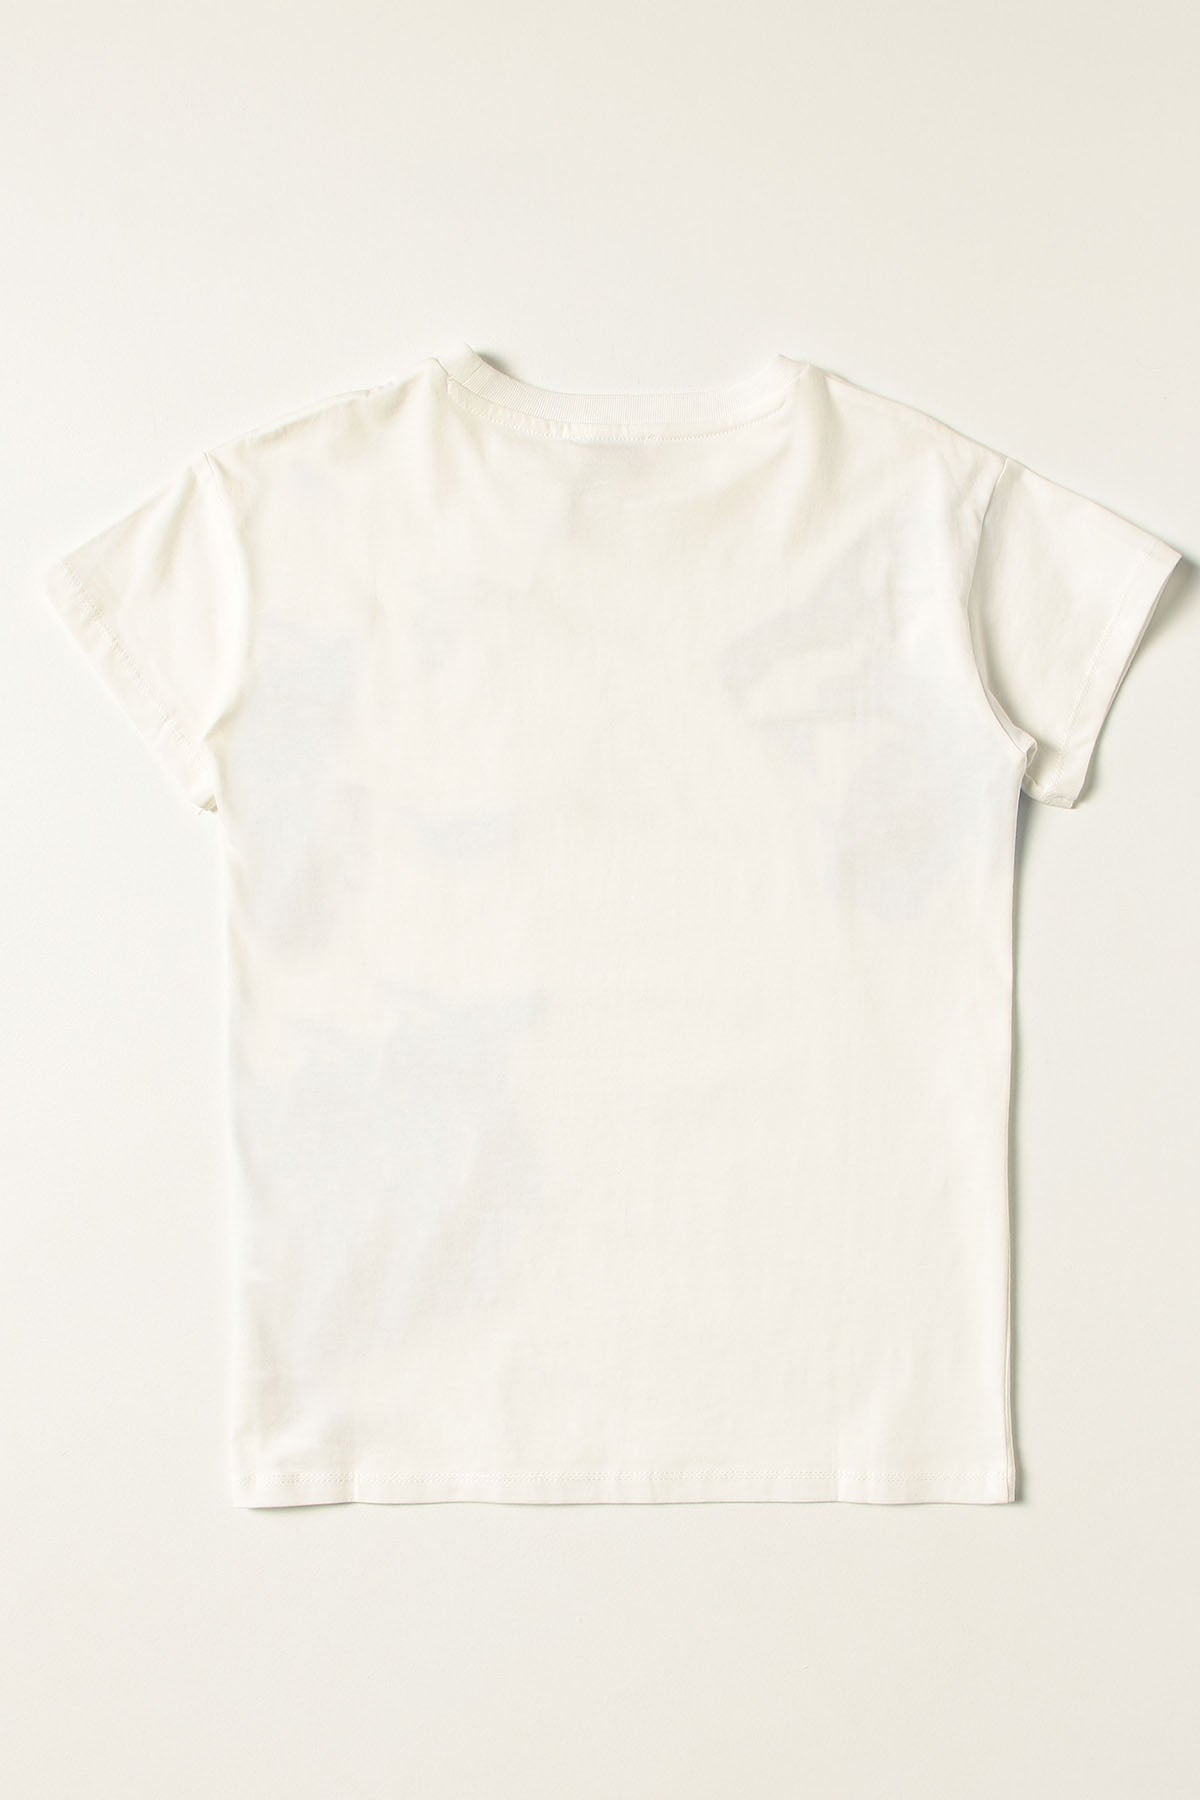 Kenzo Kids 4-5 Yaş Erkek Çocuk Logolu T-shirt-Libas Trendy Fashion Store